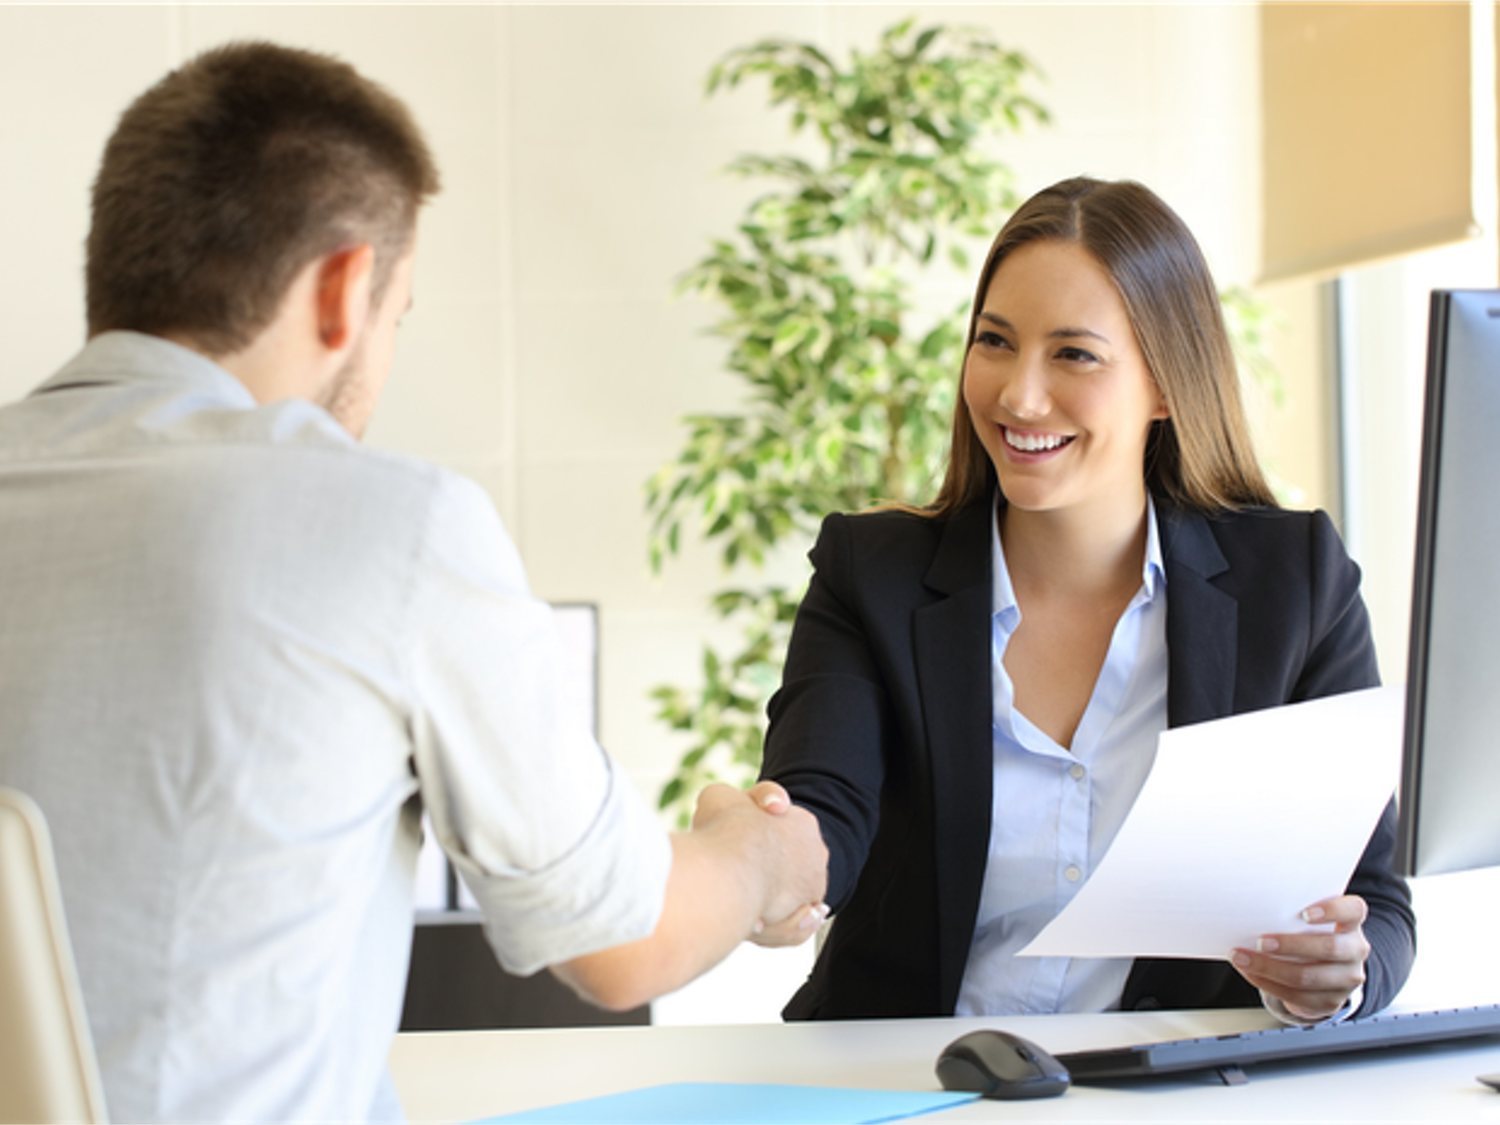 Todo lo que debes preguntar en una entrevista de trabajo para conseguir el puesto, según expertos